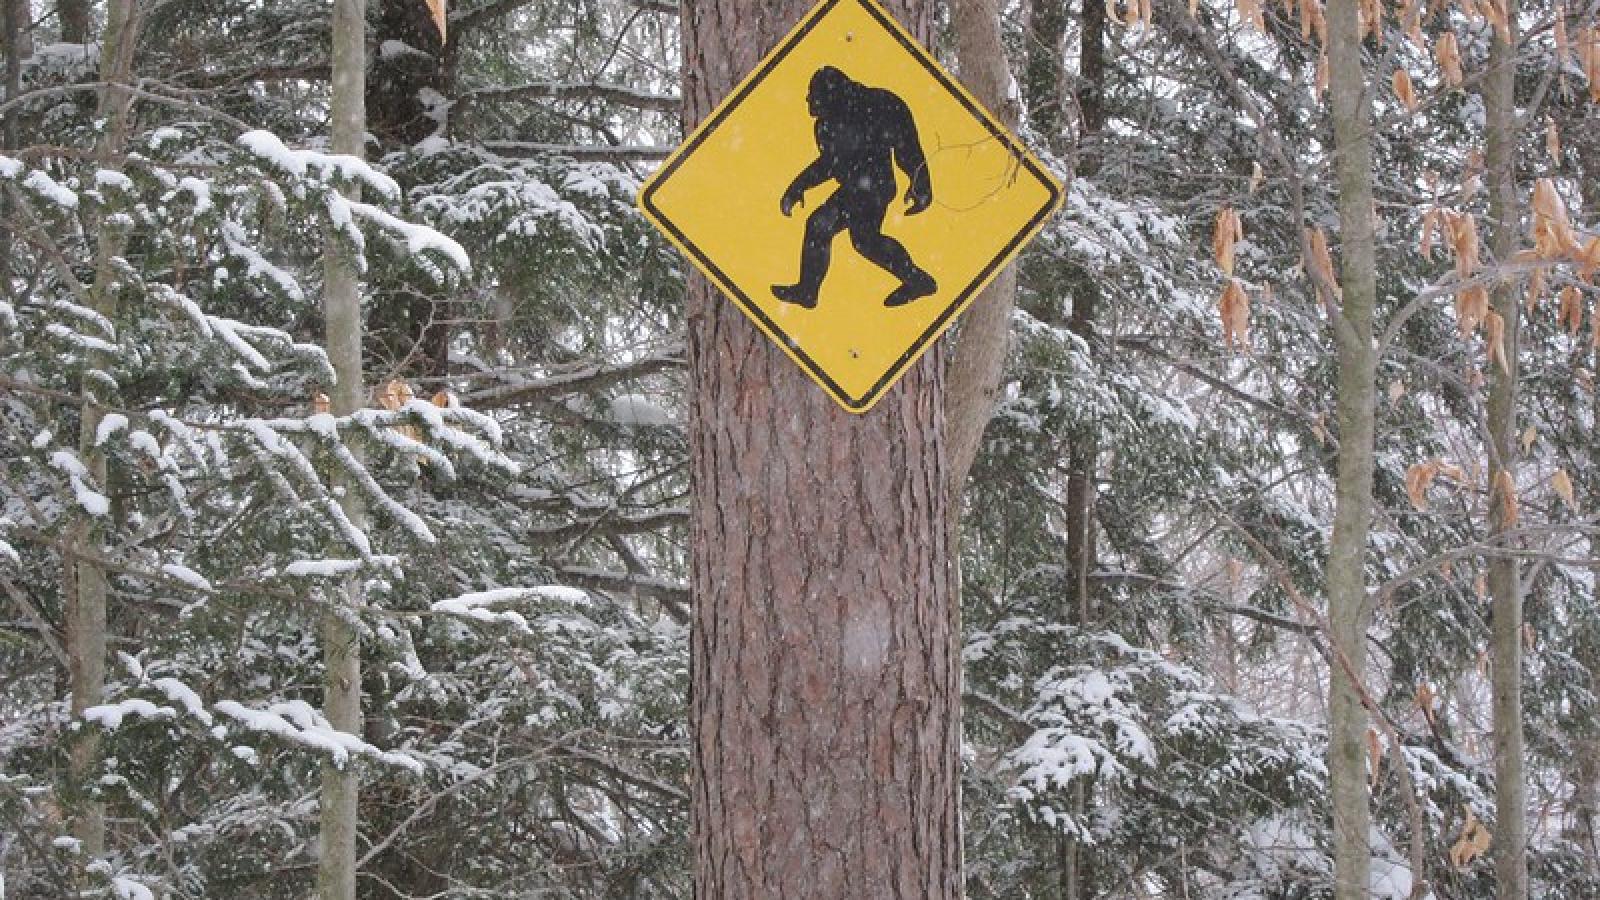 Panneau de signalisation Bigfoot affiché sur un arbre dans une forêt du Vermont